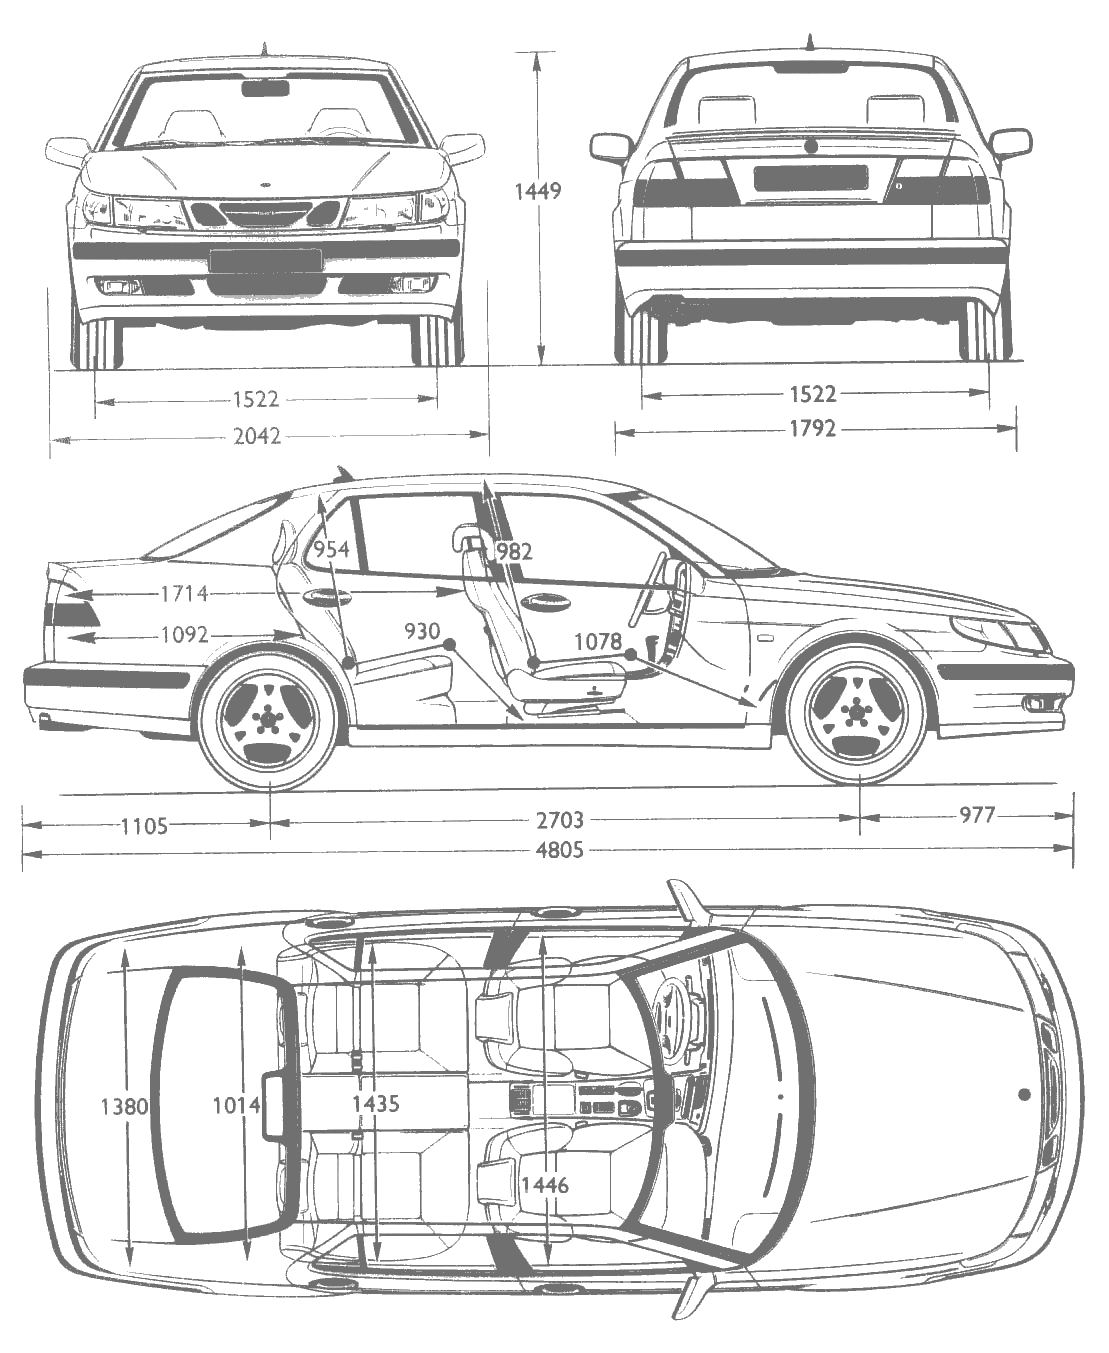 Saab 9-5 blueprints